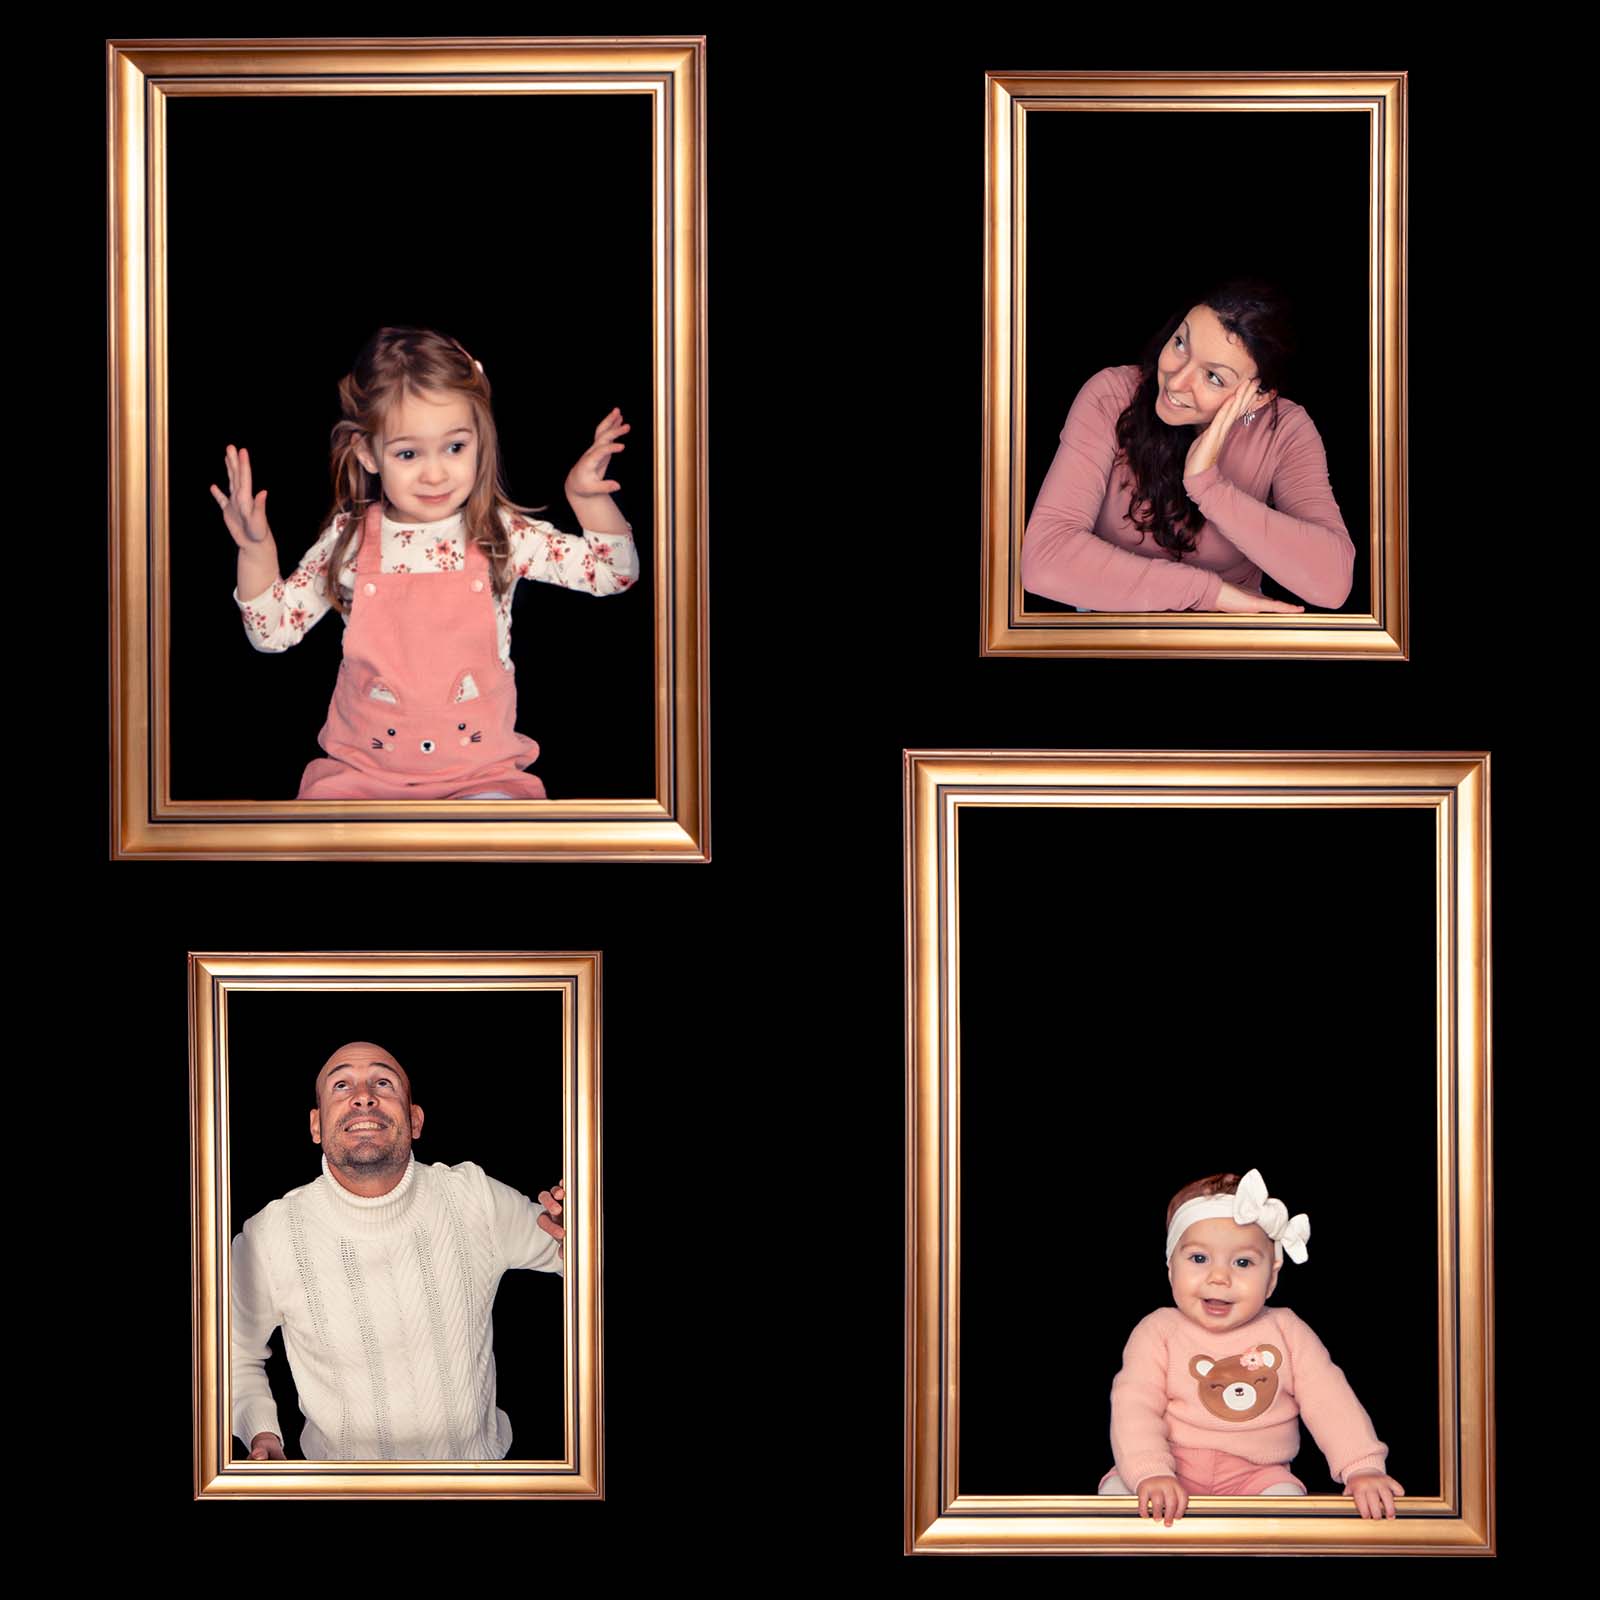 montage photo d'une famille chacun est pris en individuel dans un cadre